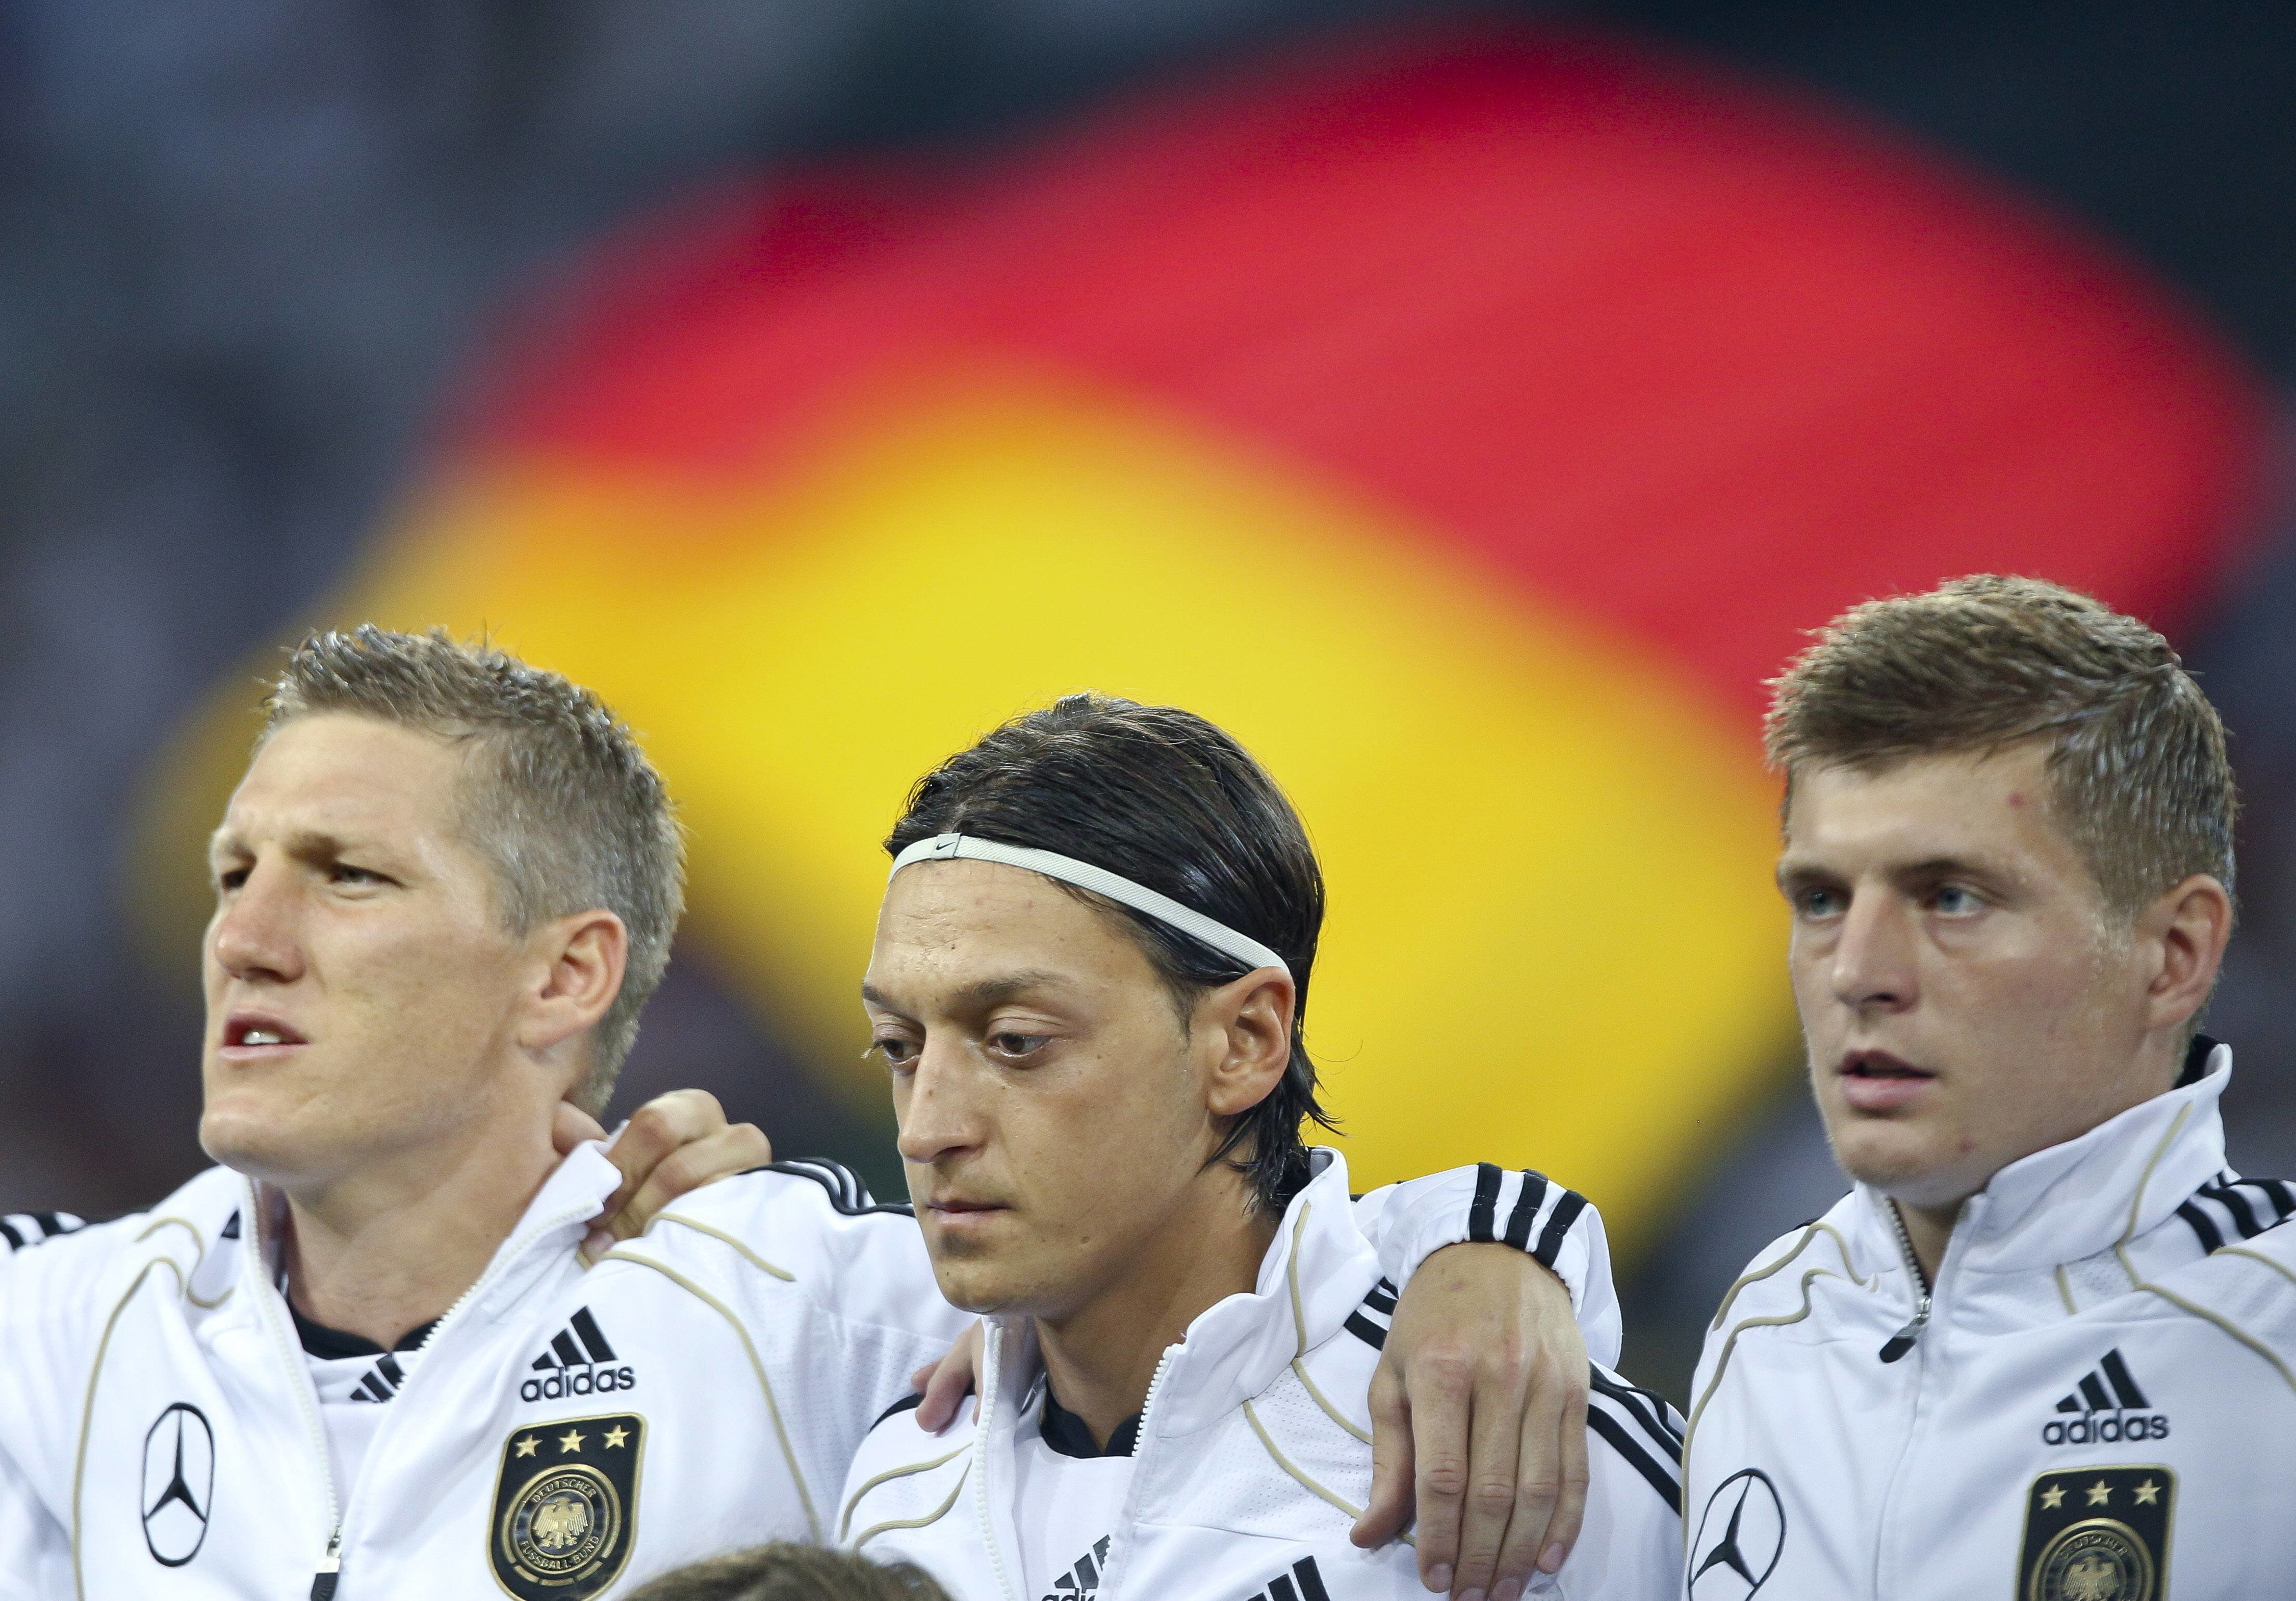  Vokietijos vyrų futbolo rinktinė. 2012 metai. ImagoImages/Scanpix nuotr.